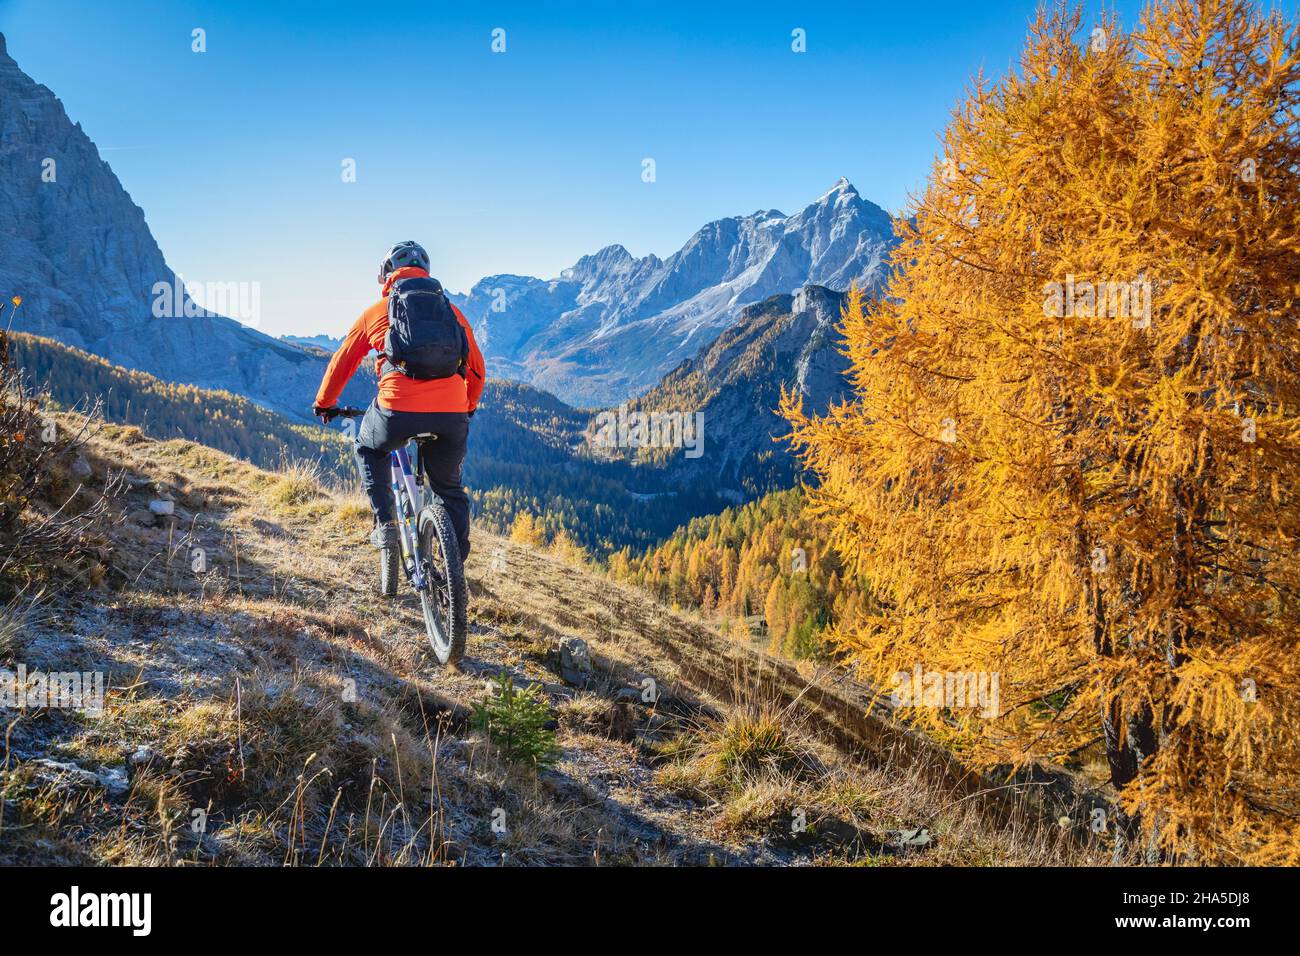 E-Bike-Ausflügler auf den Wegen der dolomiten, im Hintergrund der civetta Berg, Fiorentina Tal, san vito di cadore, belluno, venetien, italien Stockfoto